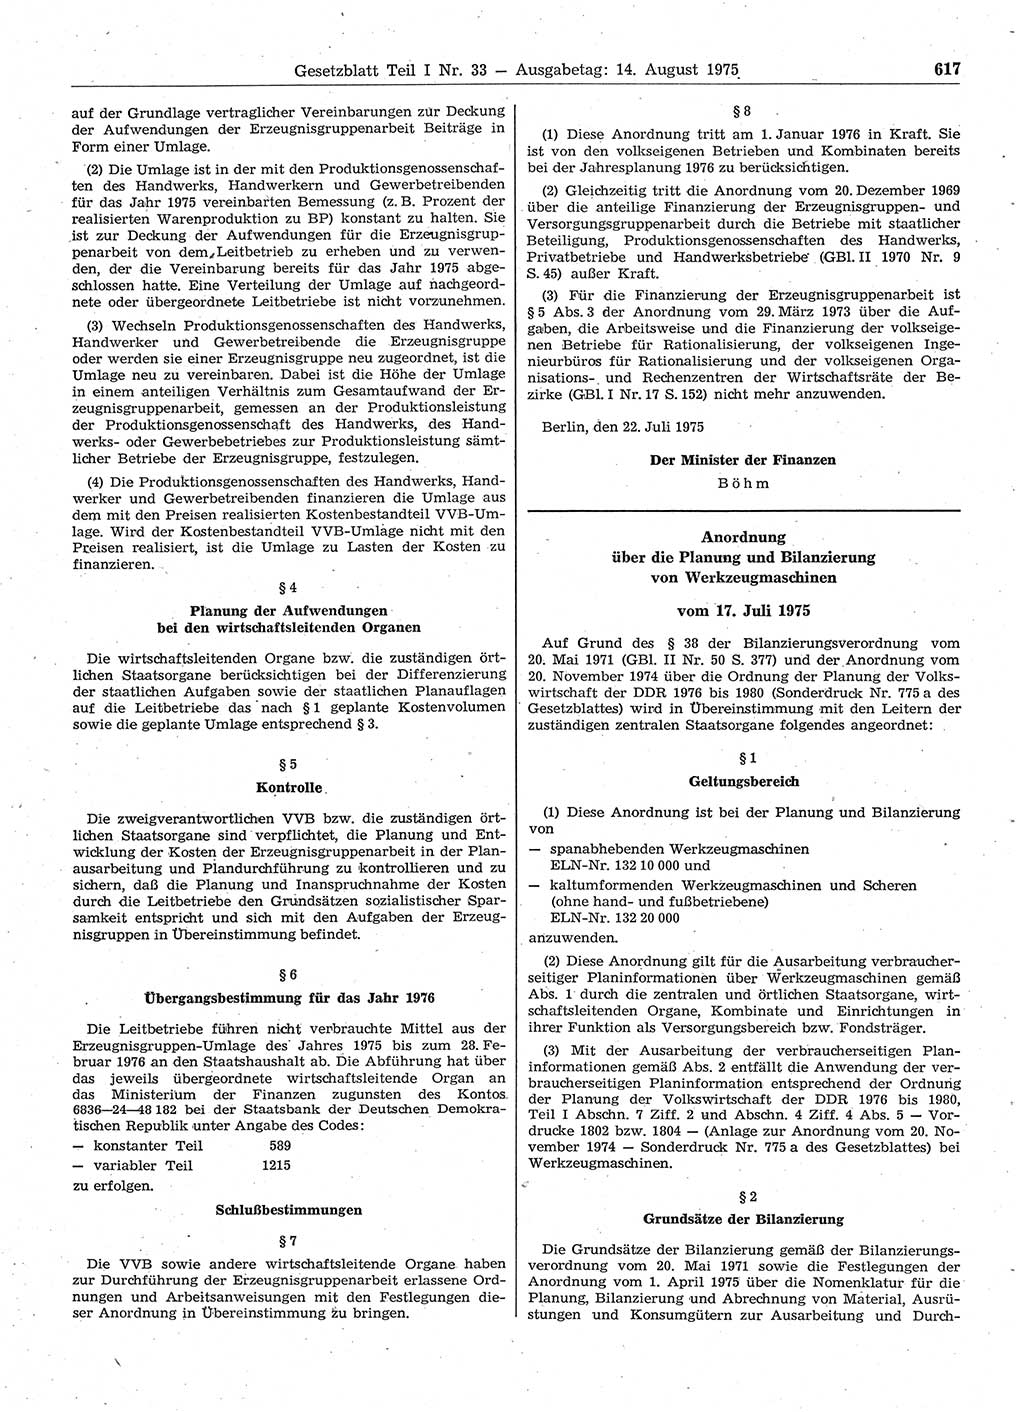 Gesetzblatt (GBl.) der Deutschen Demokratischen Republik (DDR) Teil Ⅰ 1975, Seite 617 (GBl. DDR Ⅰ 1975, S. 617)